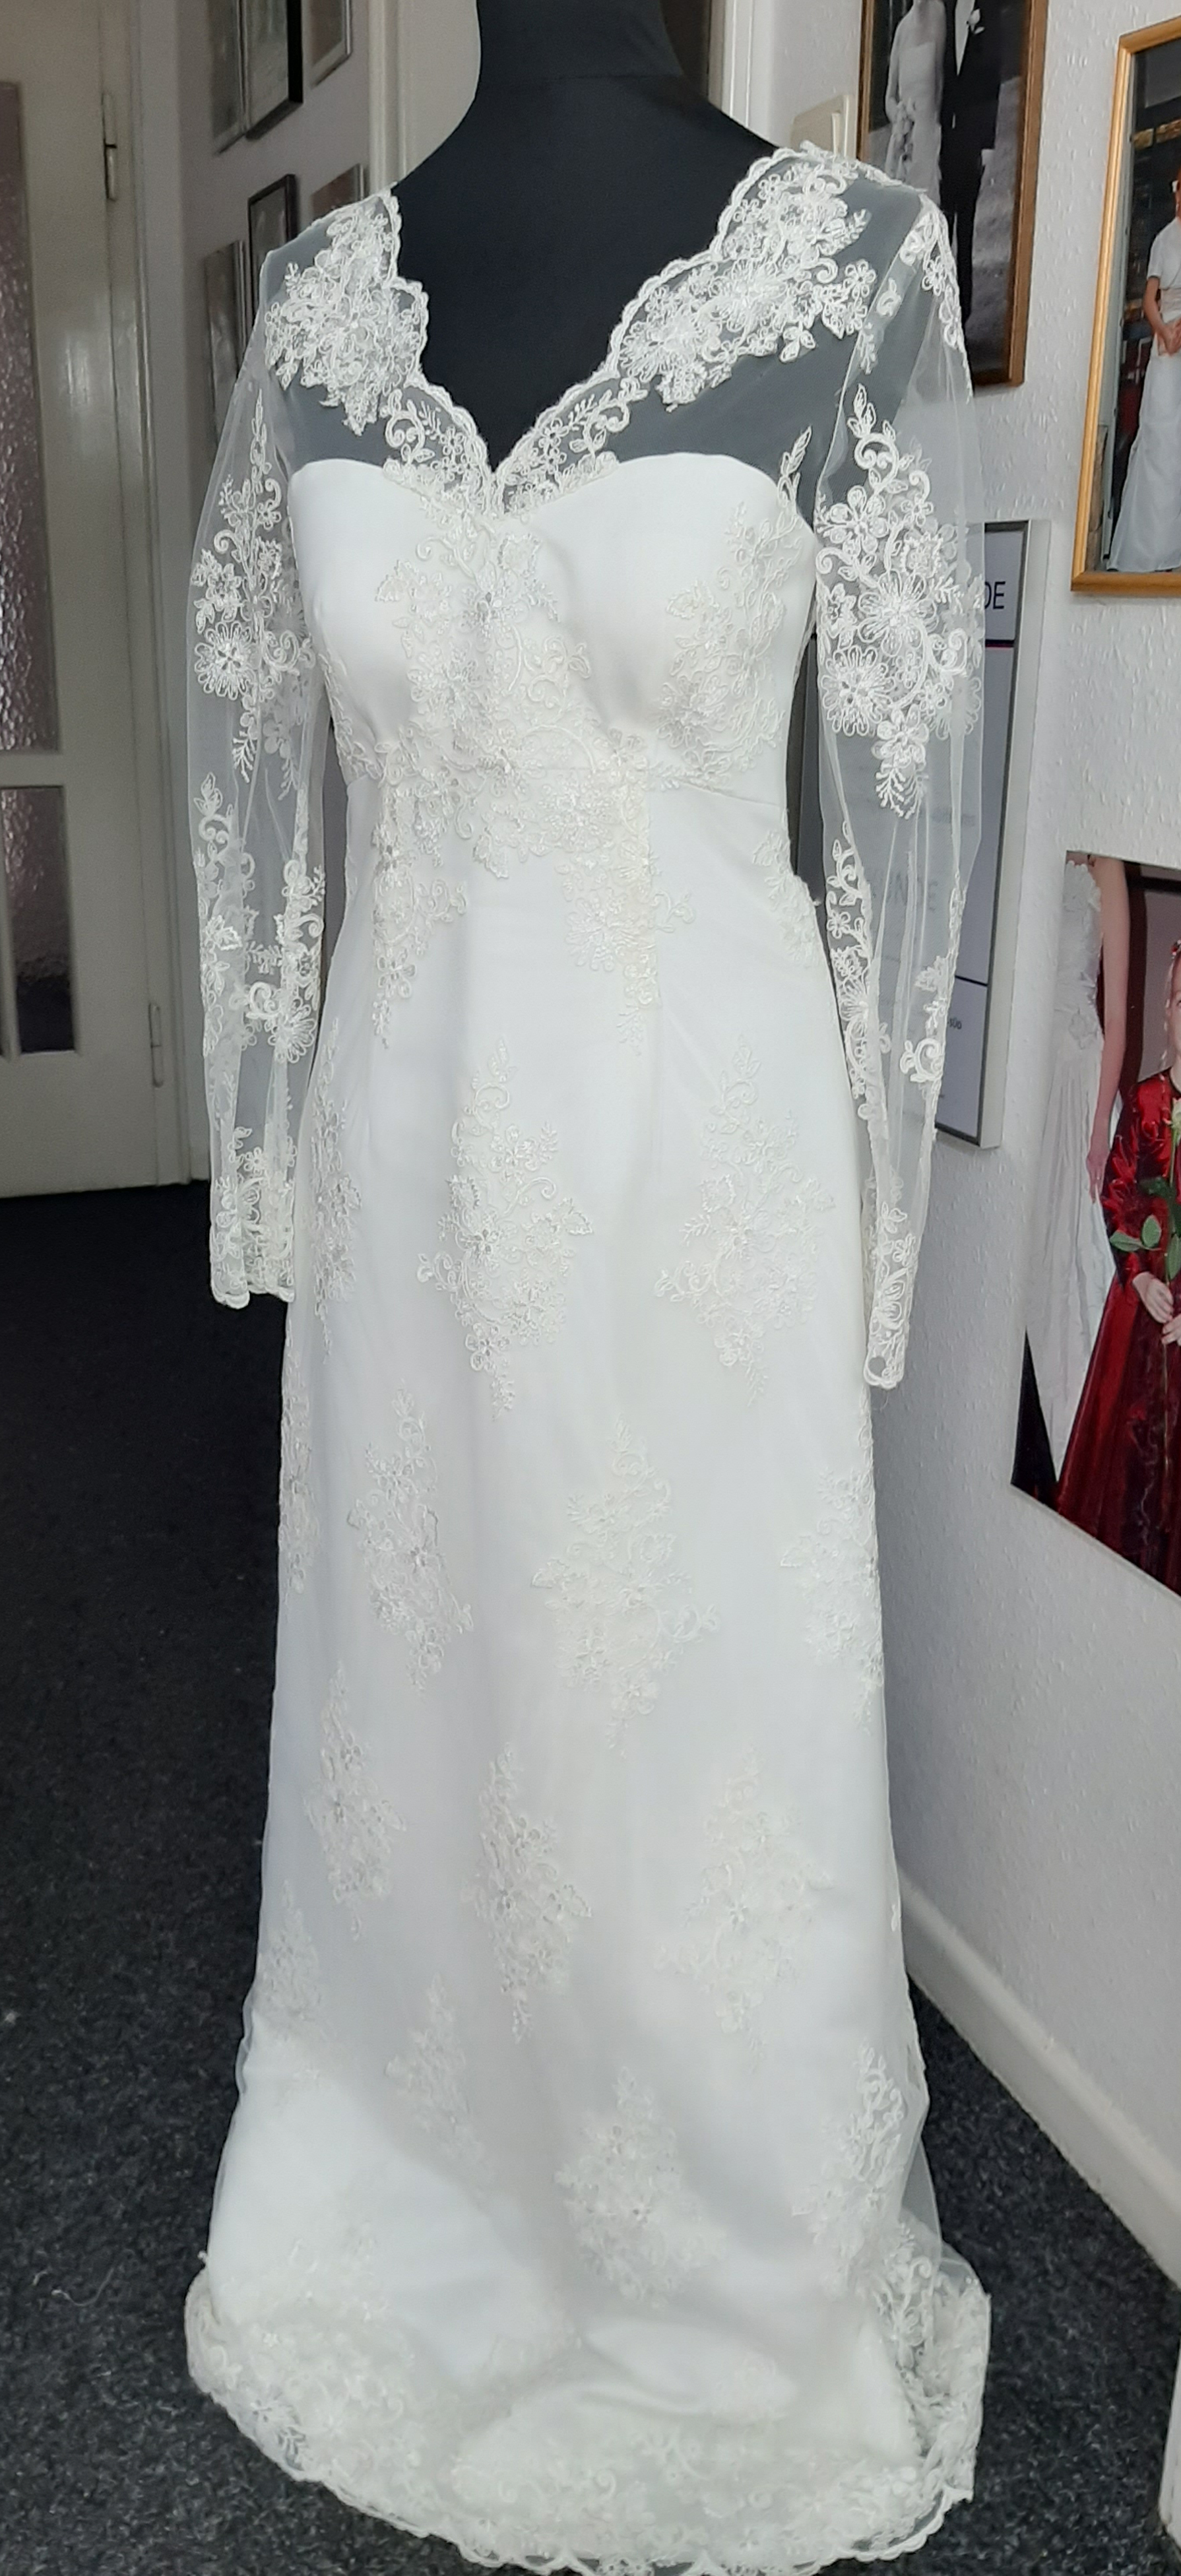 Brautkleid aus Tüllspitze auf Satin gearbeitet, Farbe Ivory , schöne Rückenansicht